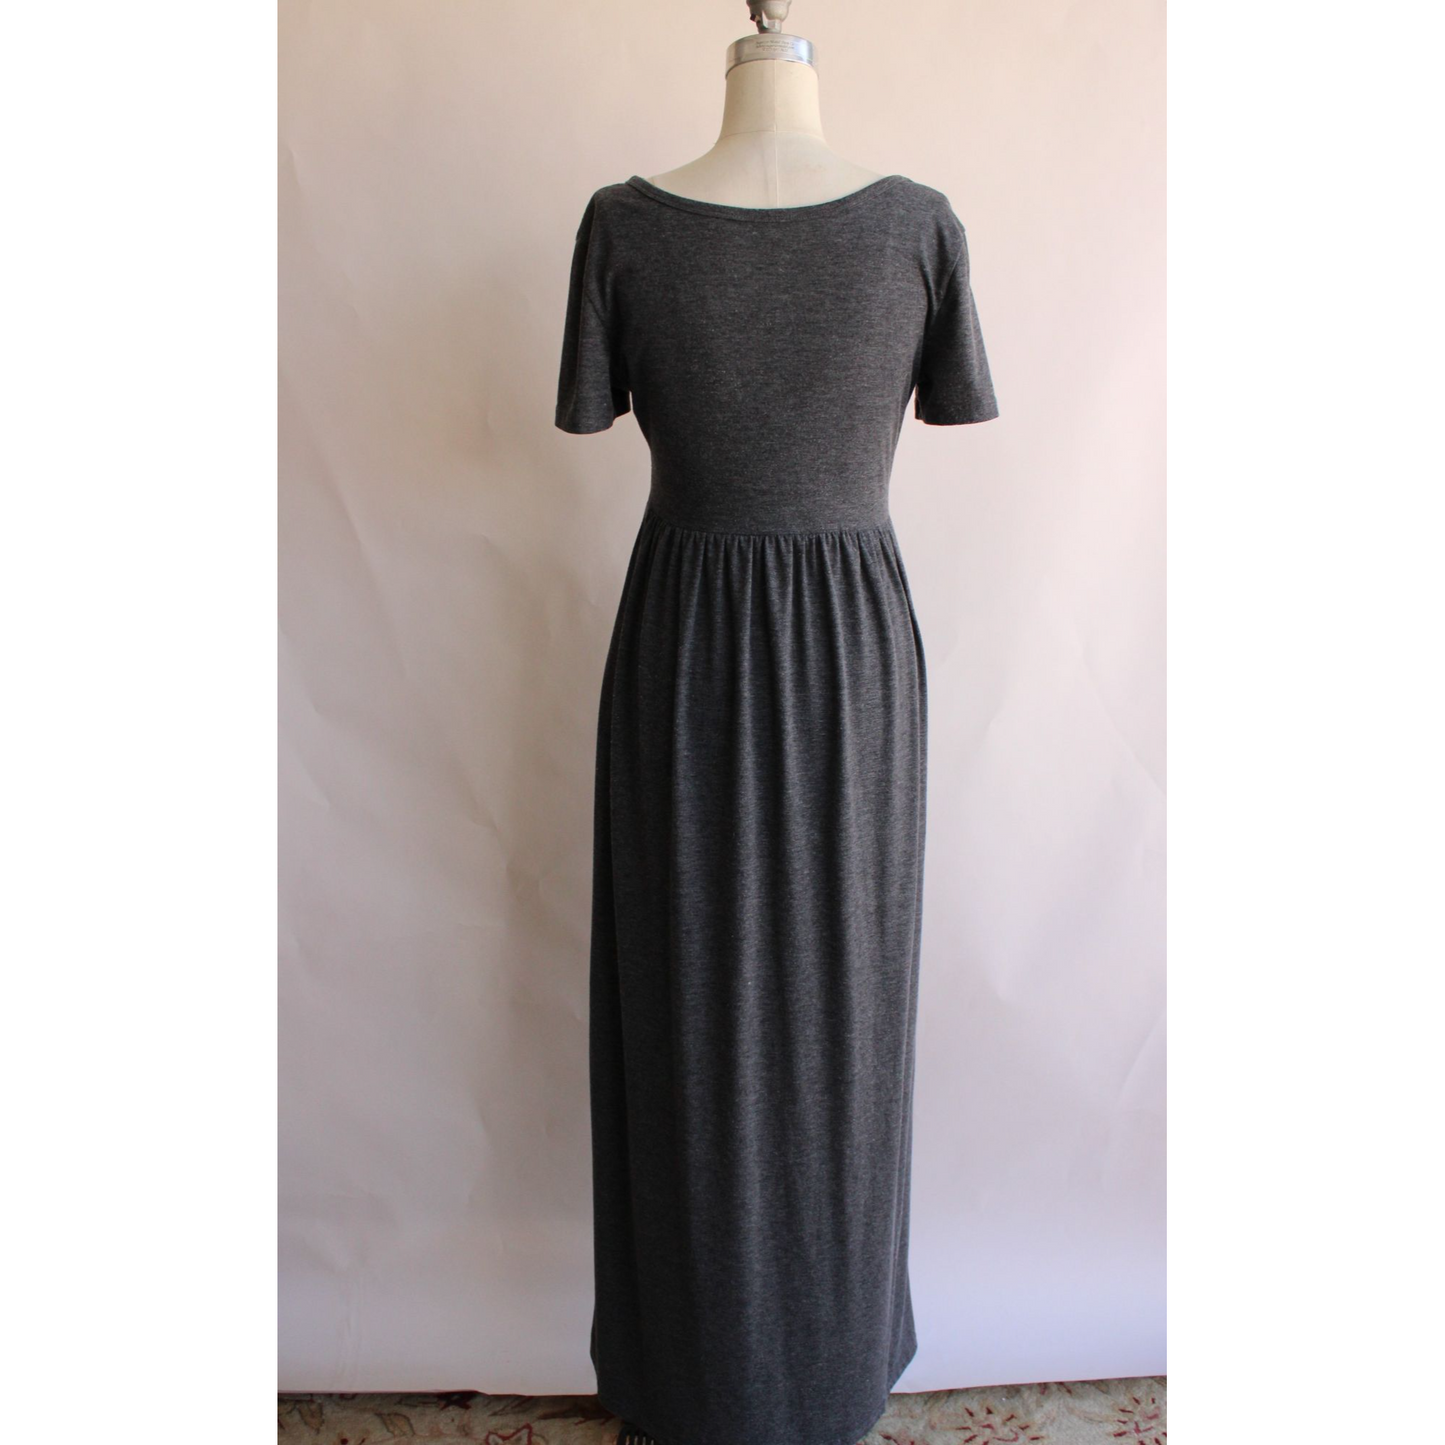 Womens Gray Maxi Dress with Pockets, Size Medium